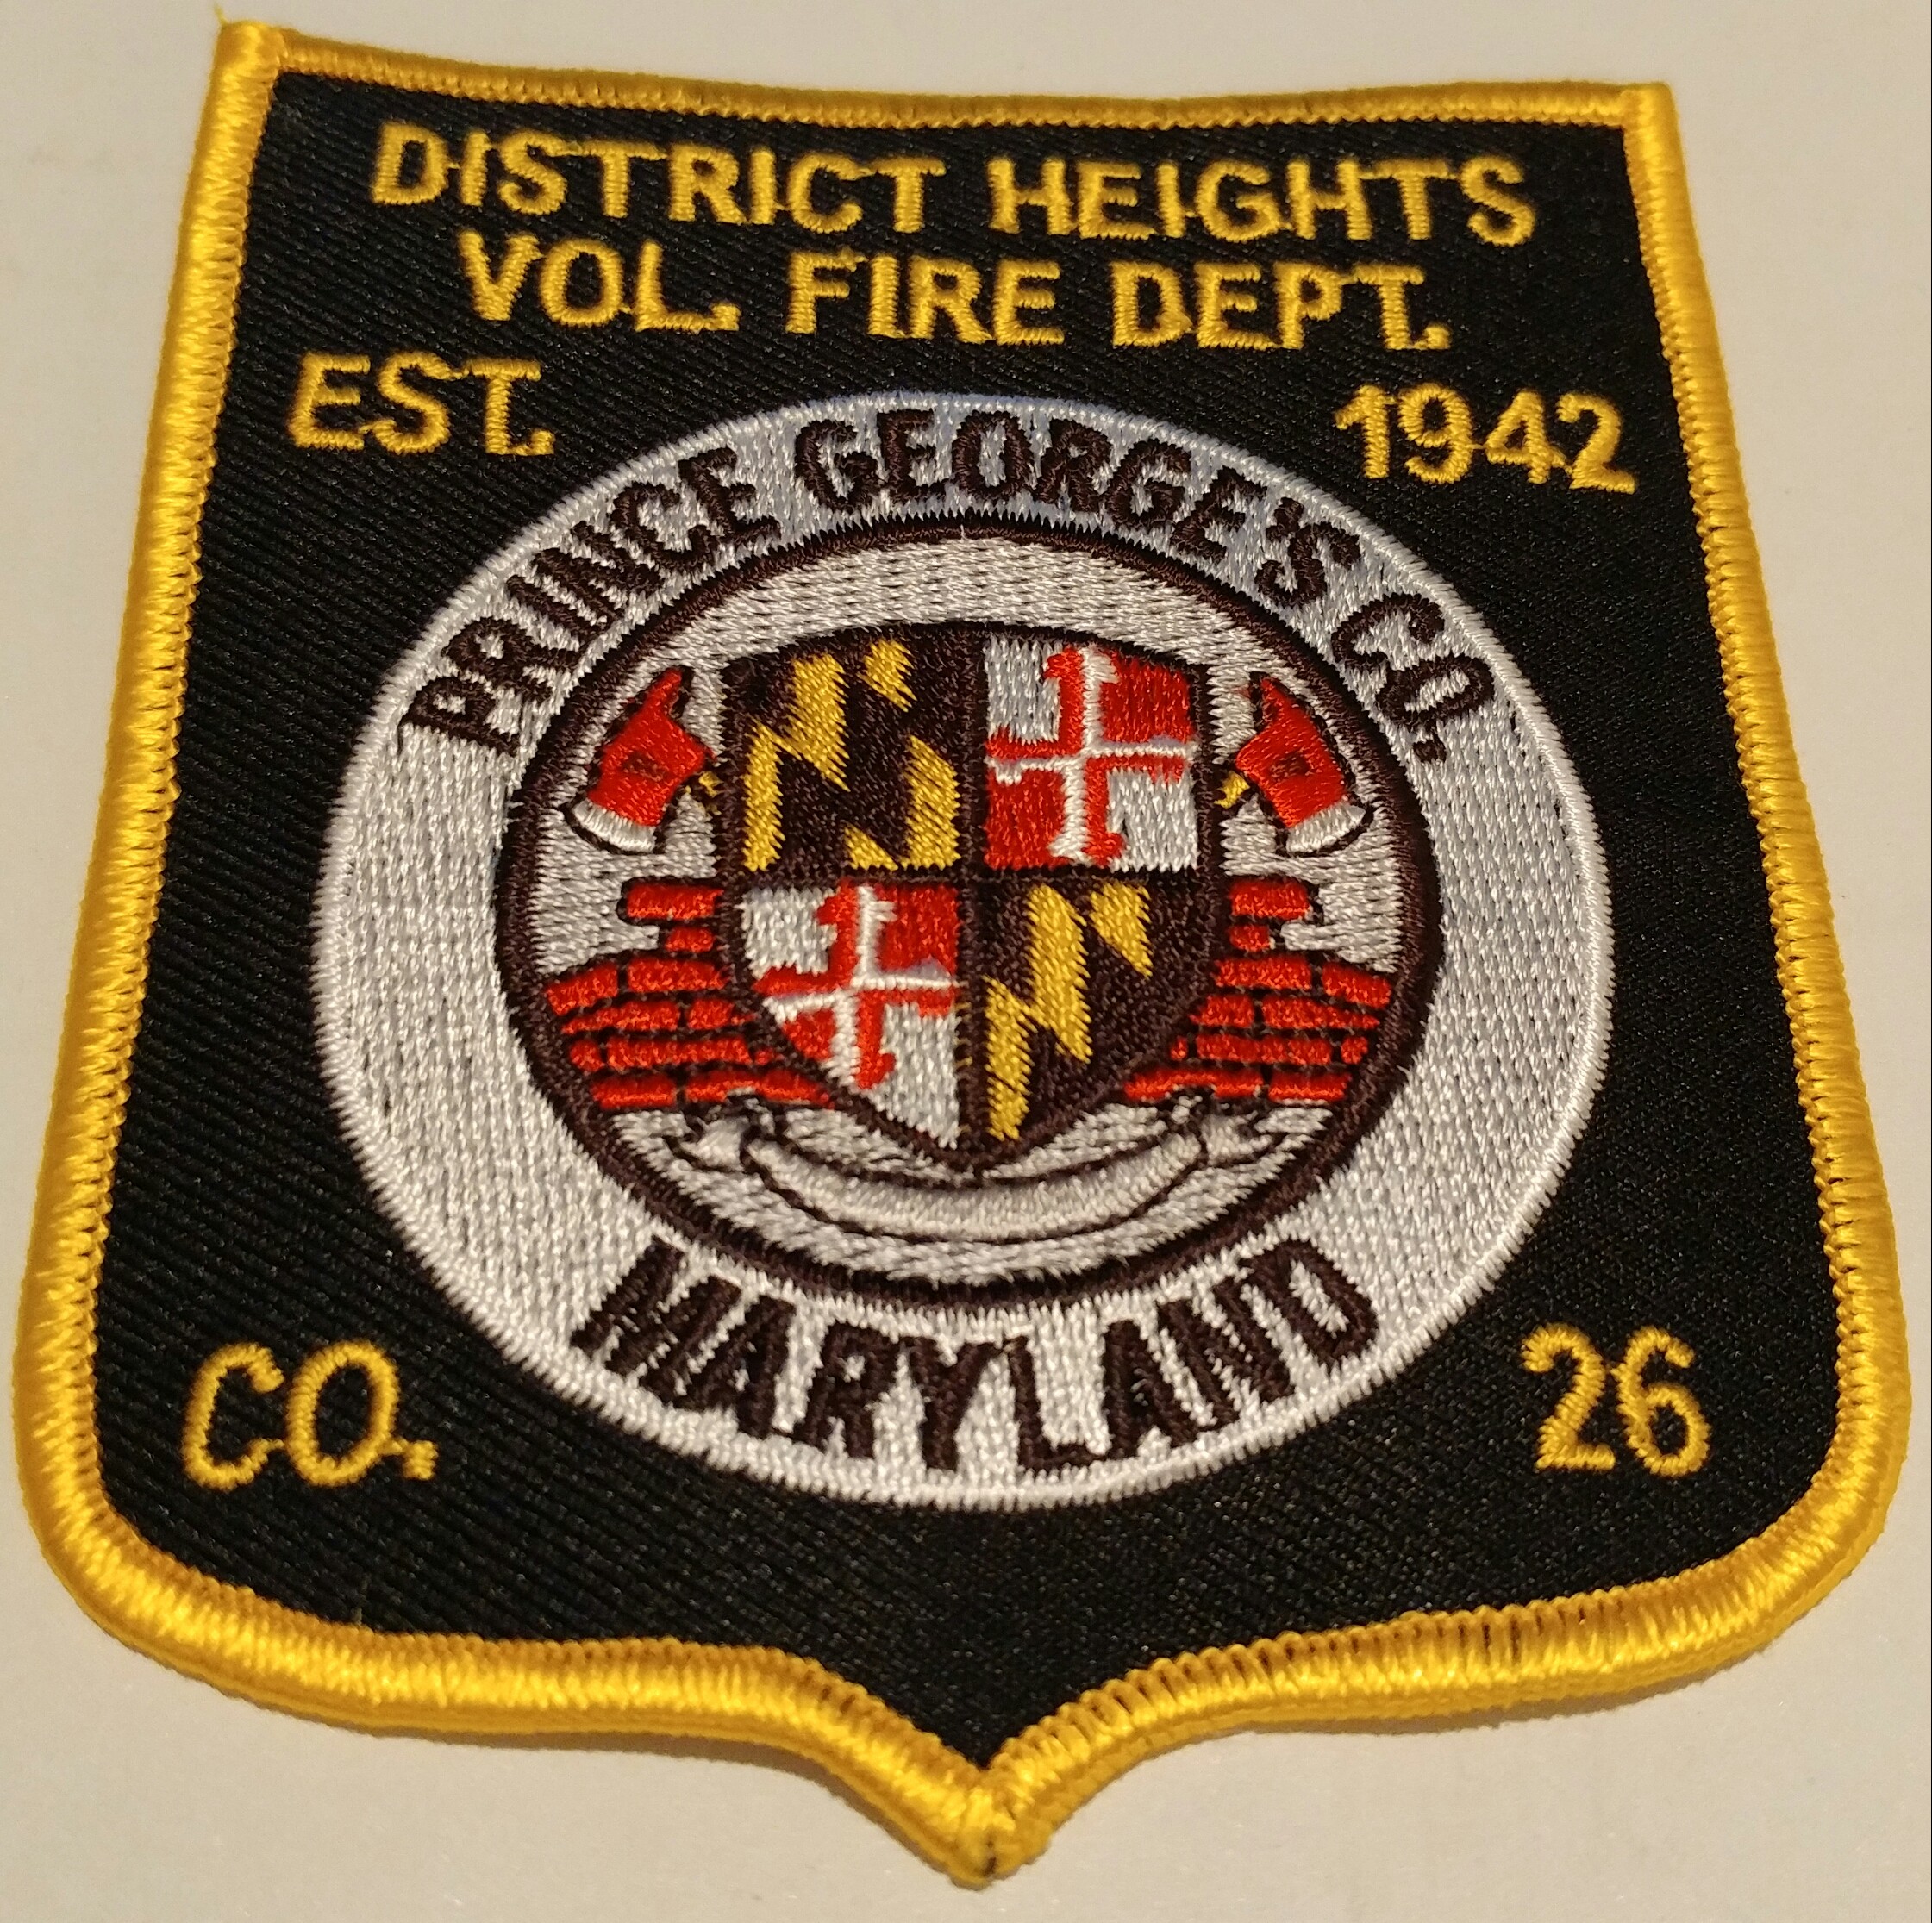 District Heights Volunteer Fire Department